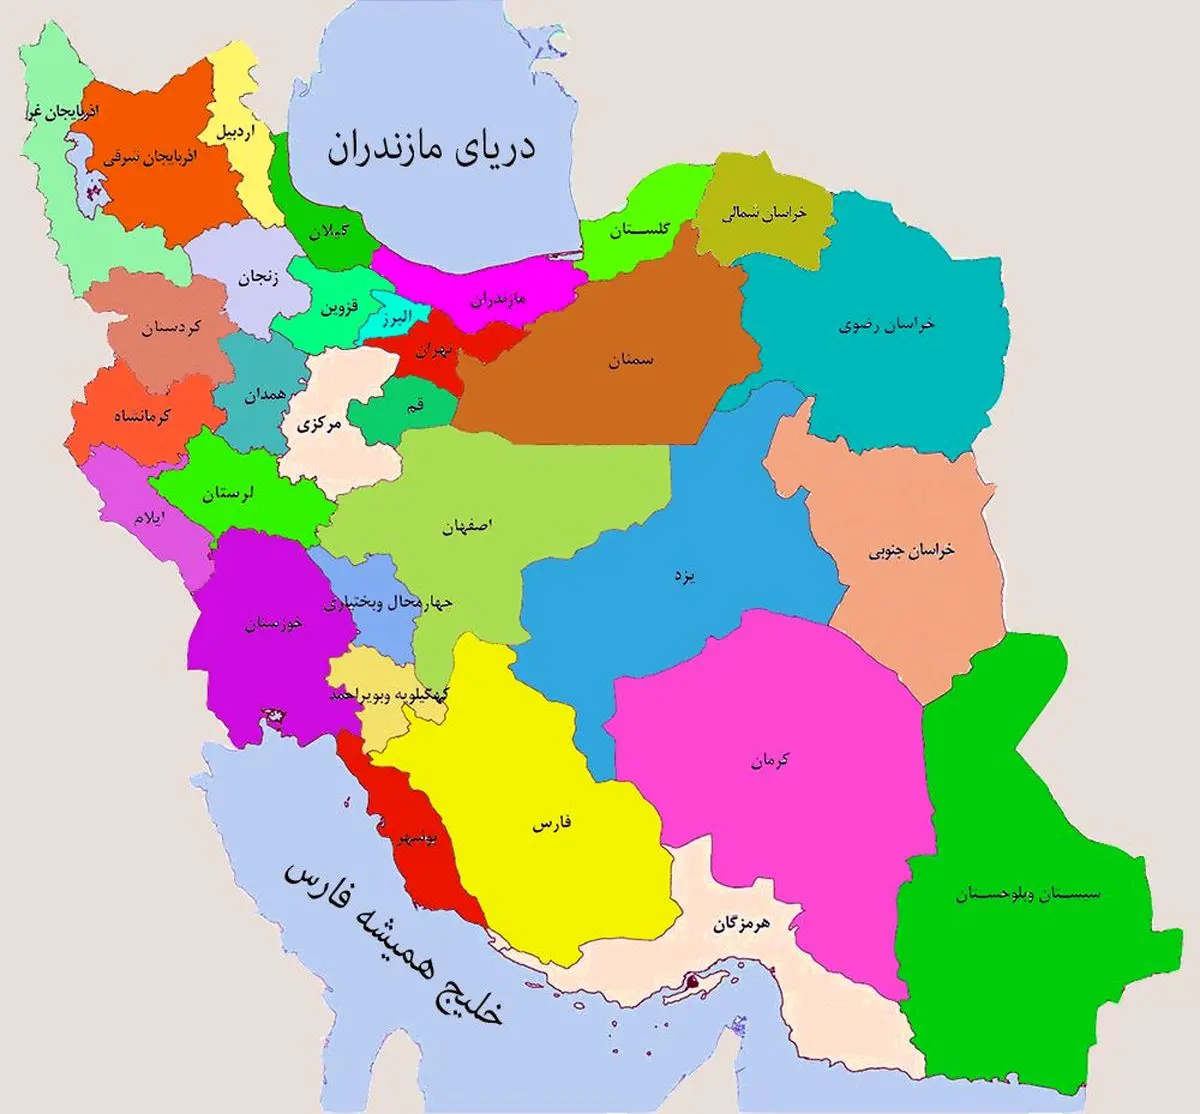 عجیب اما واقعی؛ آبشاری با طرح نقشه ایران + تصویر